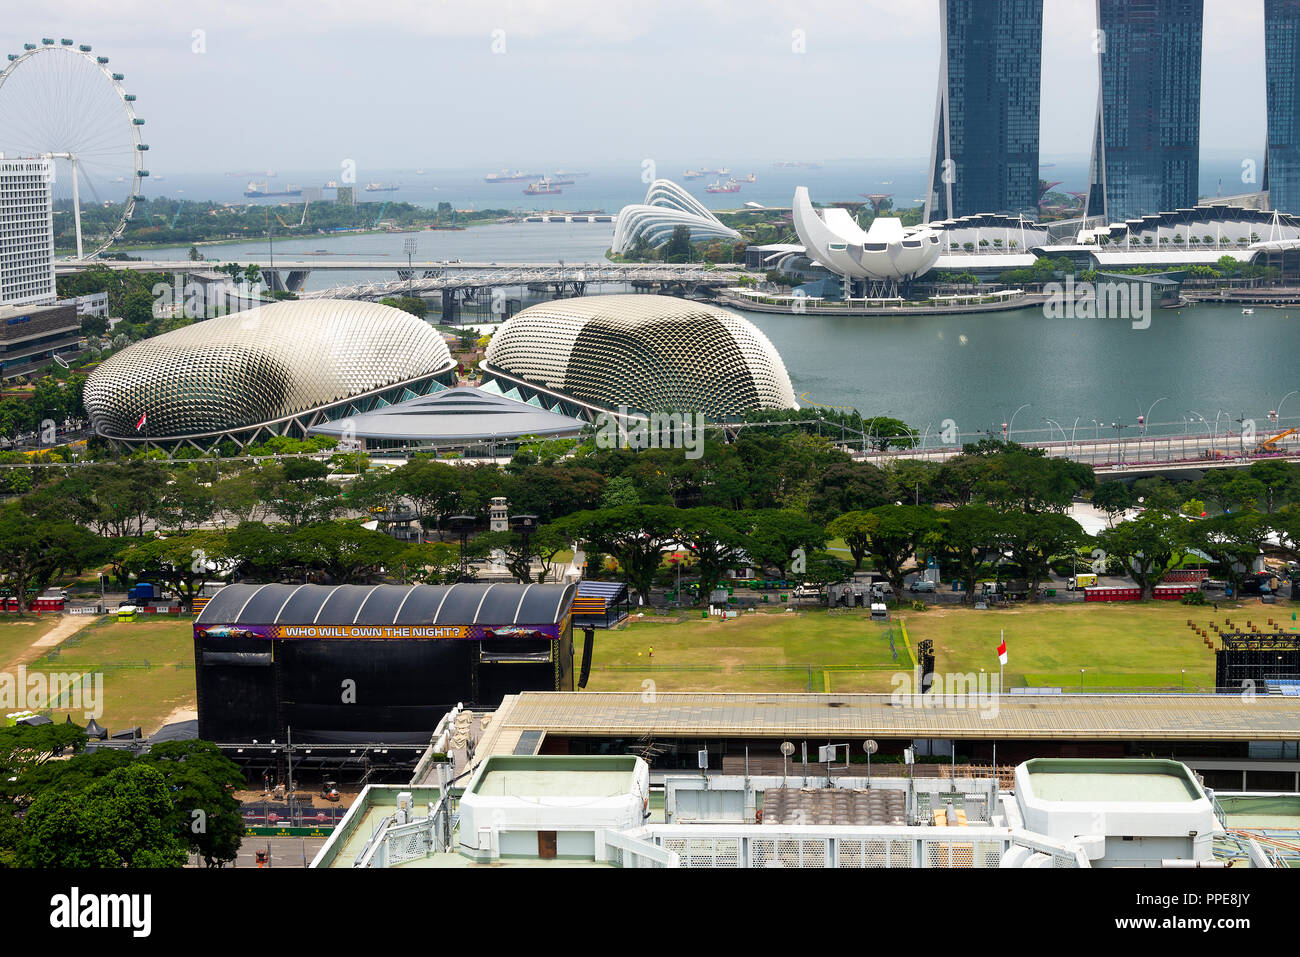 Luftaufnahme der Esplanade Theater an der Bucht, Padang, Arts Science Museum, Gardens by the Bay und Singapore Flyer Republik Singapur Asien Stockfoto